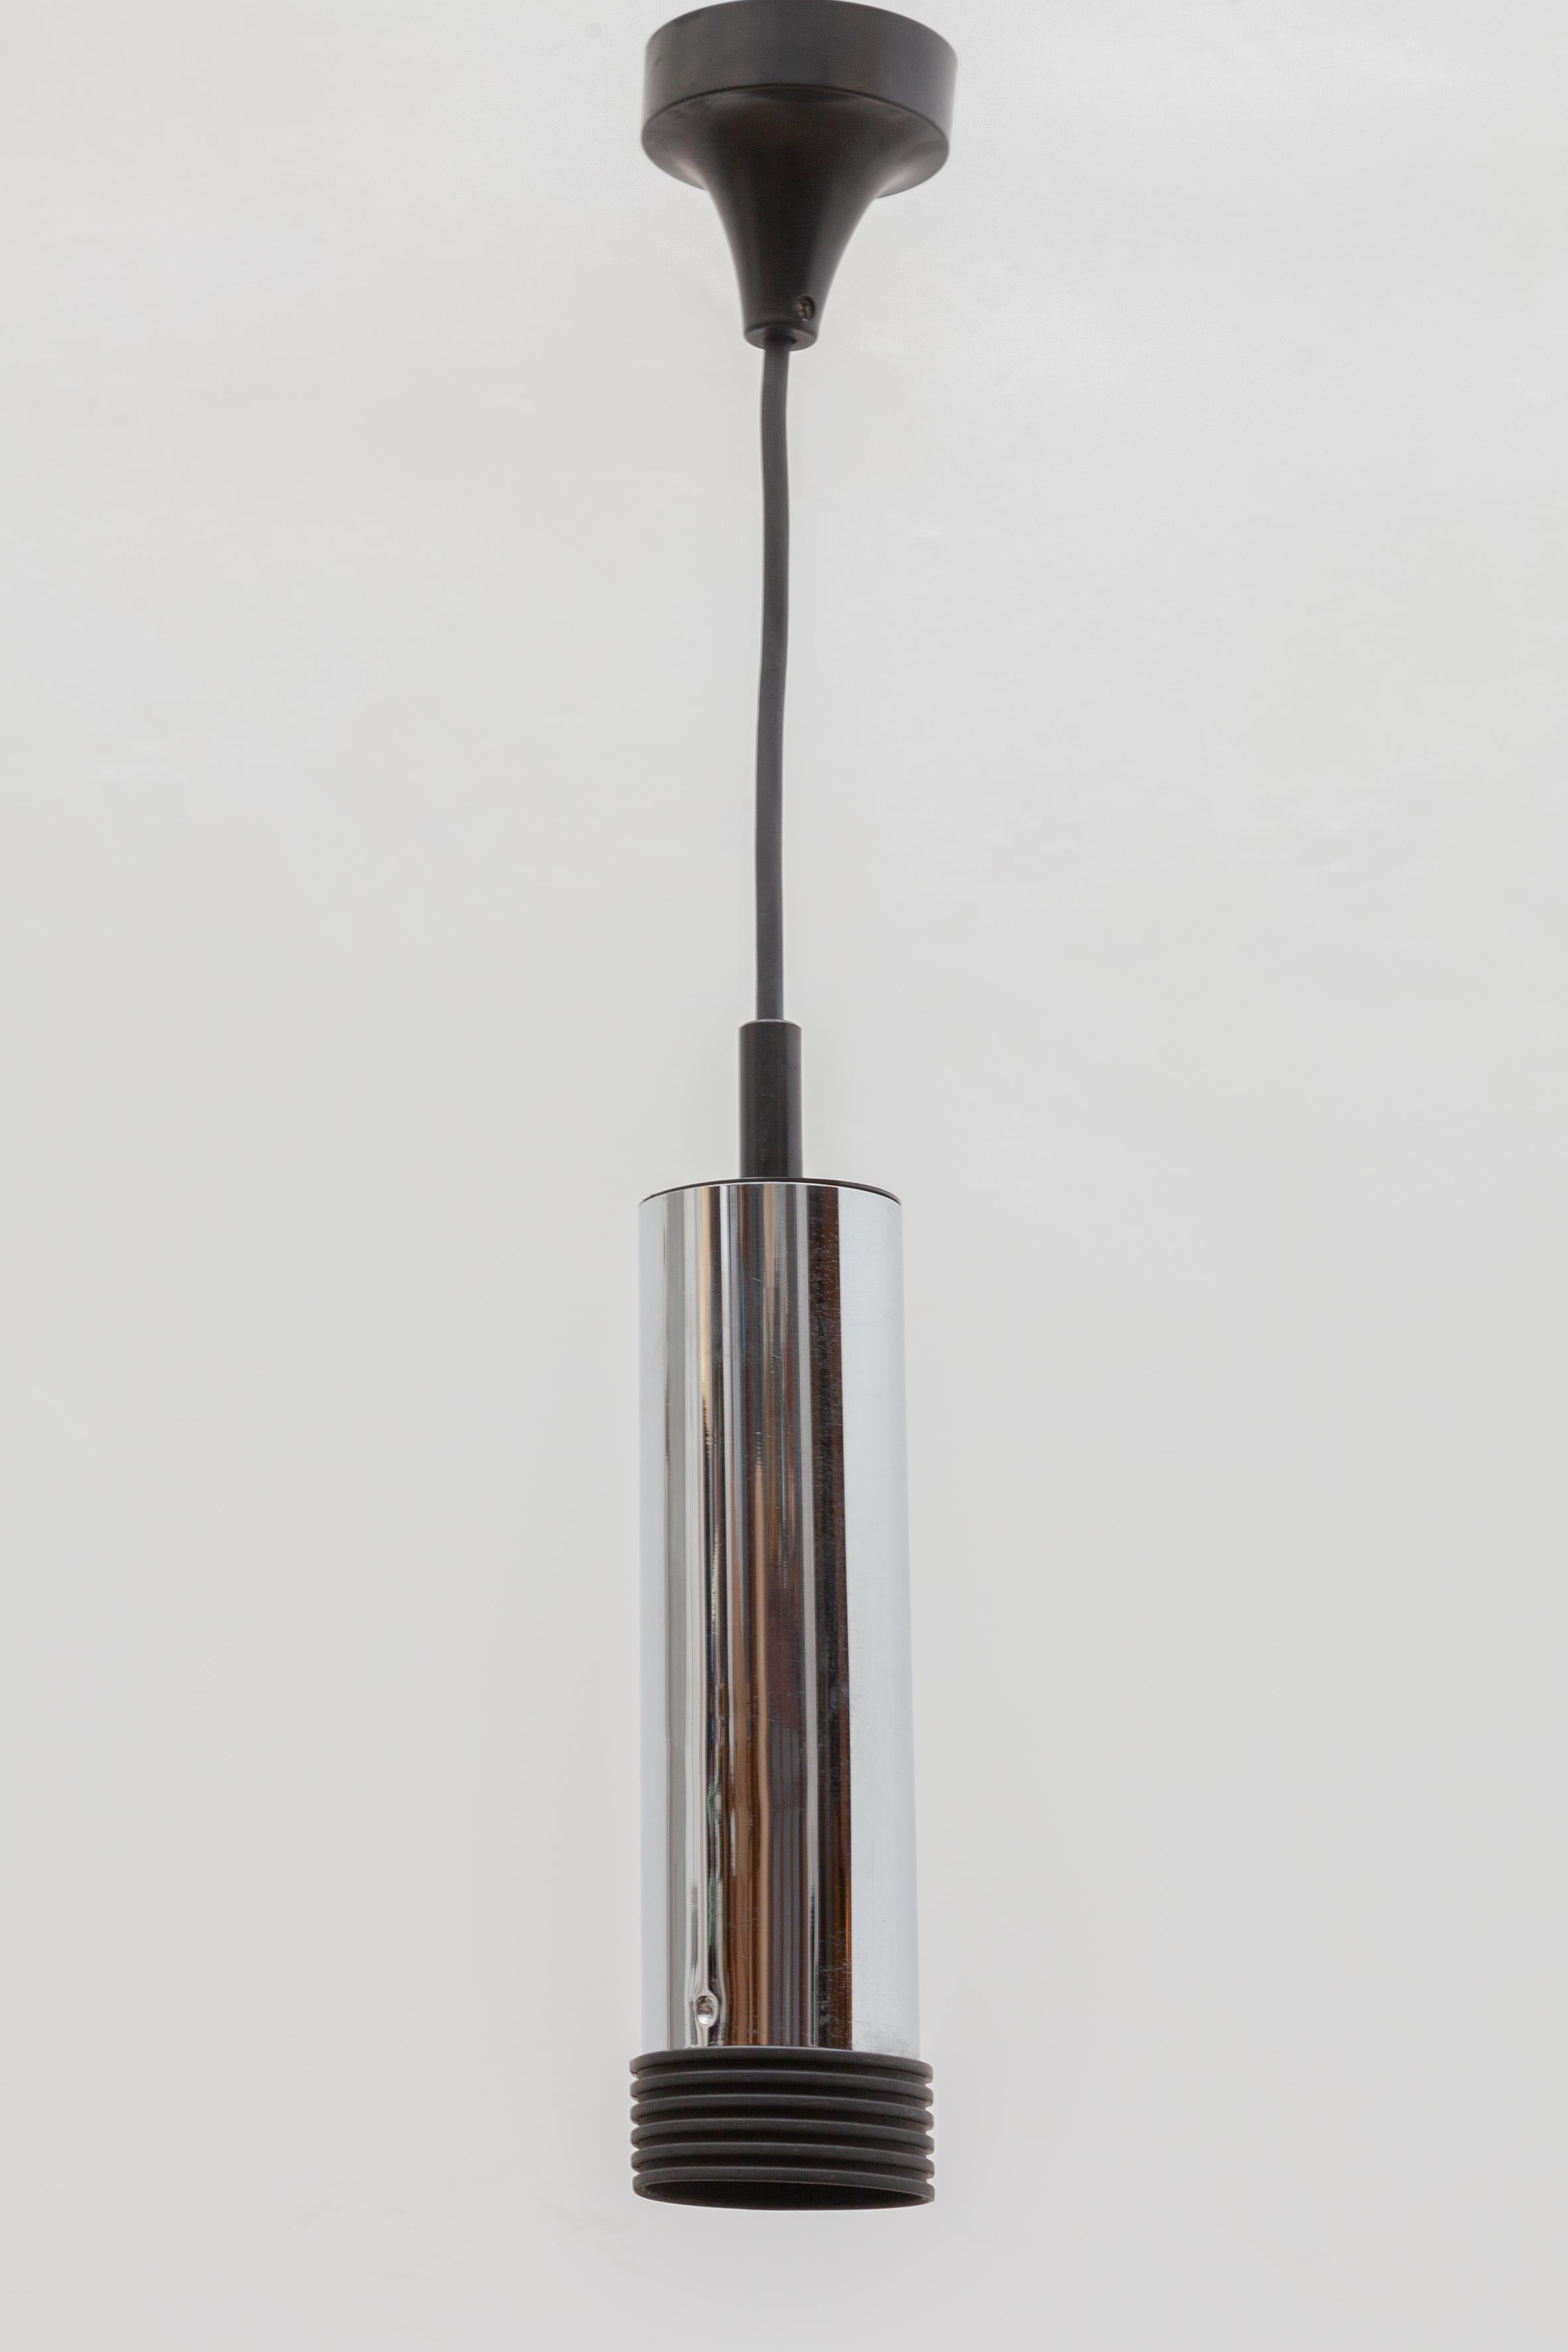 Lampes à suspension chromées vintage des années 1960. Abat-jour en tube métallique avec détails en caoutchouc noir et cordons noirs. Parfaites lampes pour une table ou une surface de travail dans la cuisine, avec une émission de lumière fortement